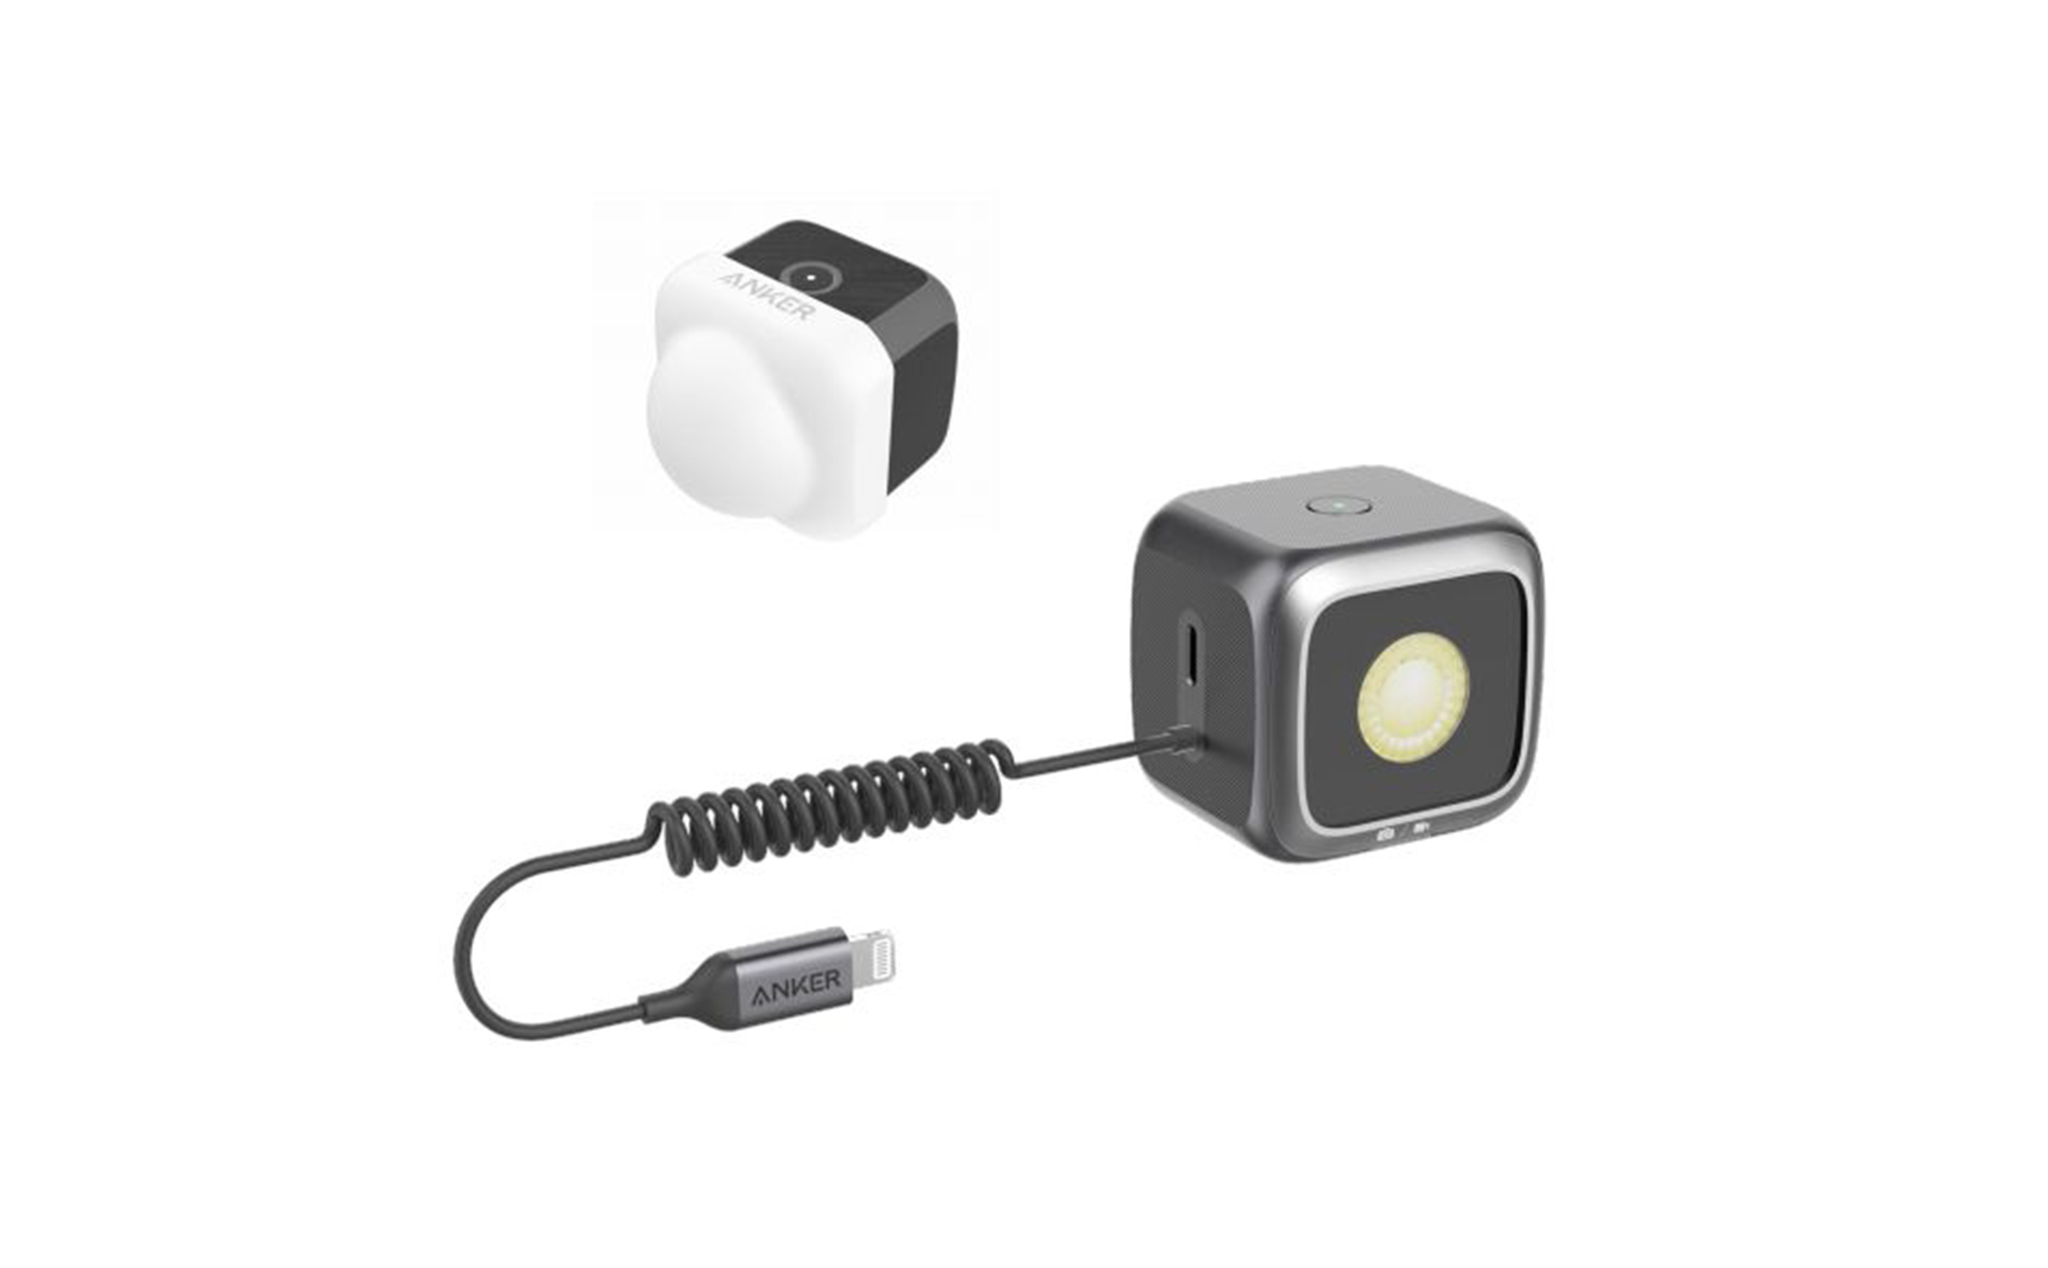 Anker ra mắt đèn LED trợ sáng sử dụng cho camera iPhone 11 và 11 Pro, có MFi, giá 50 USD